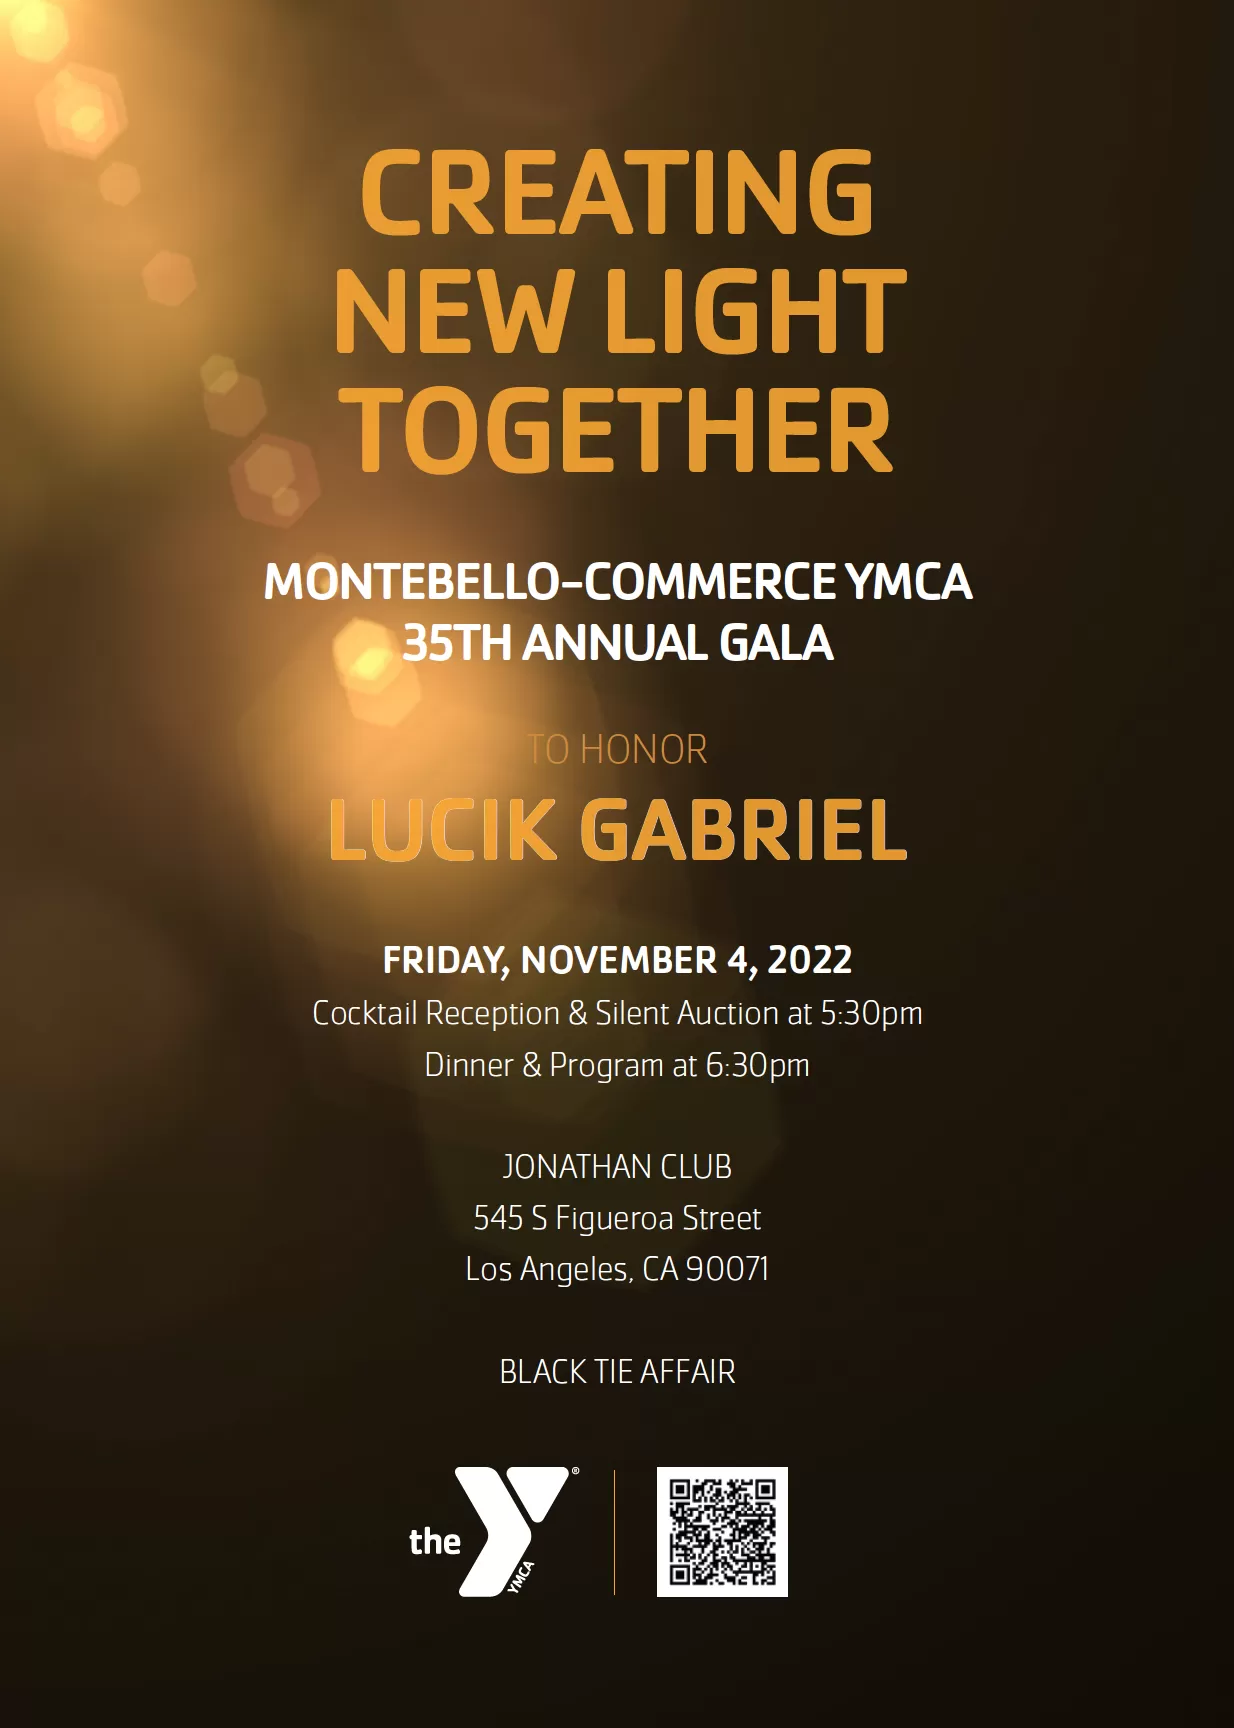 Montebello-Commerce YMCA 35th Annual Gala